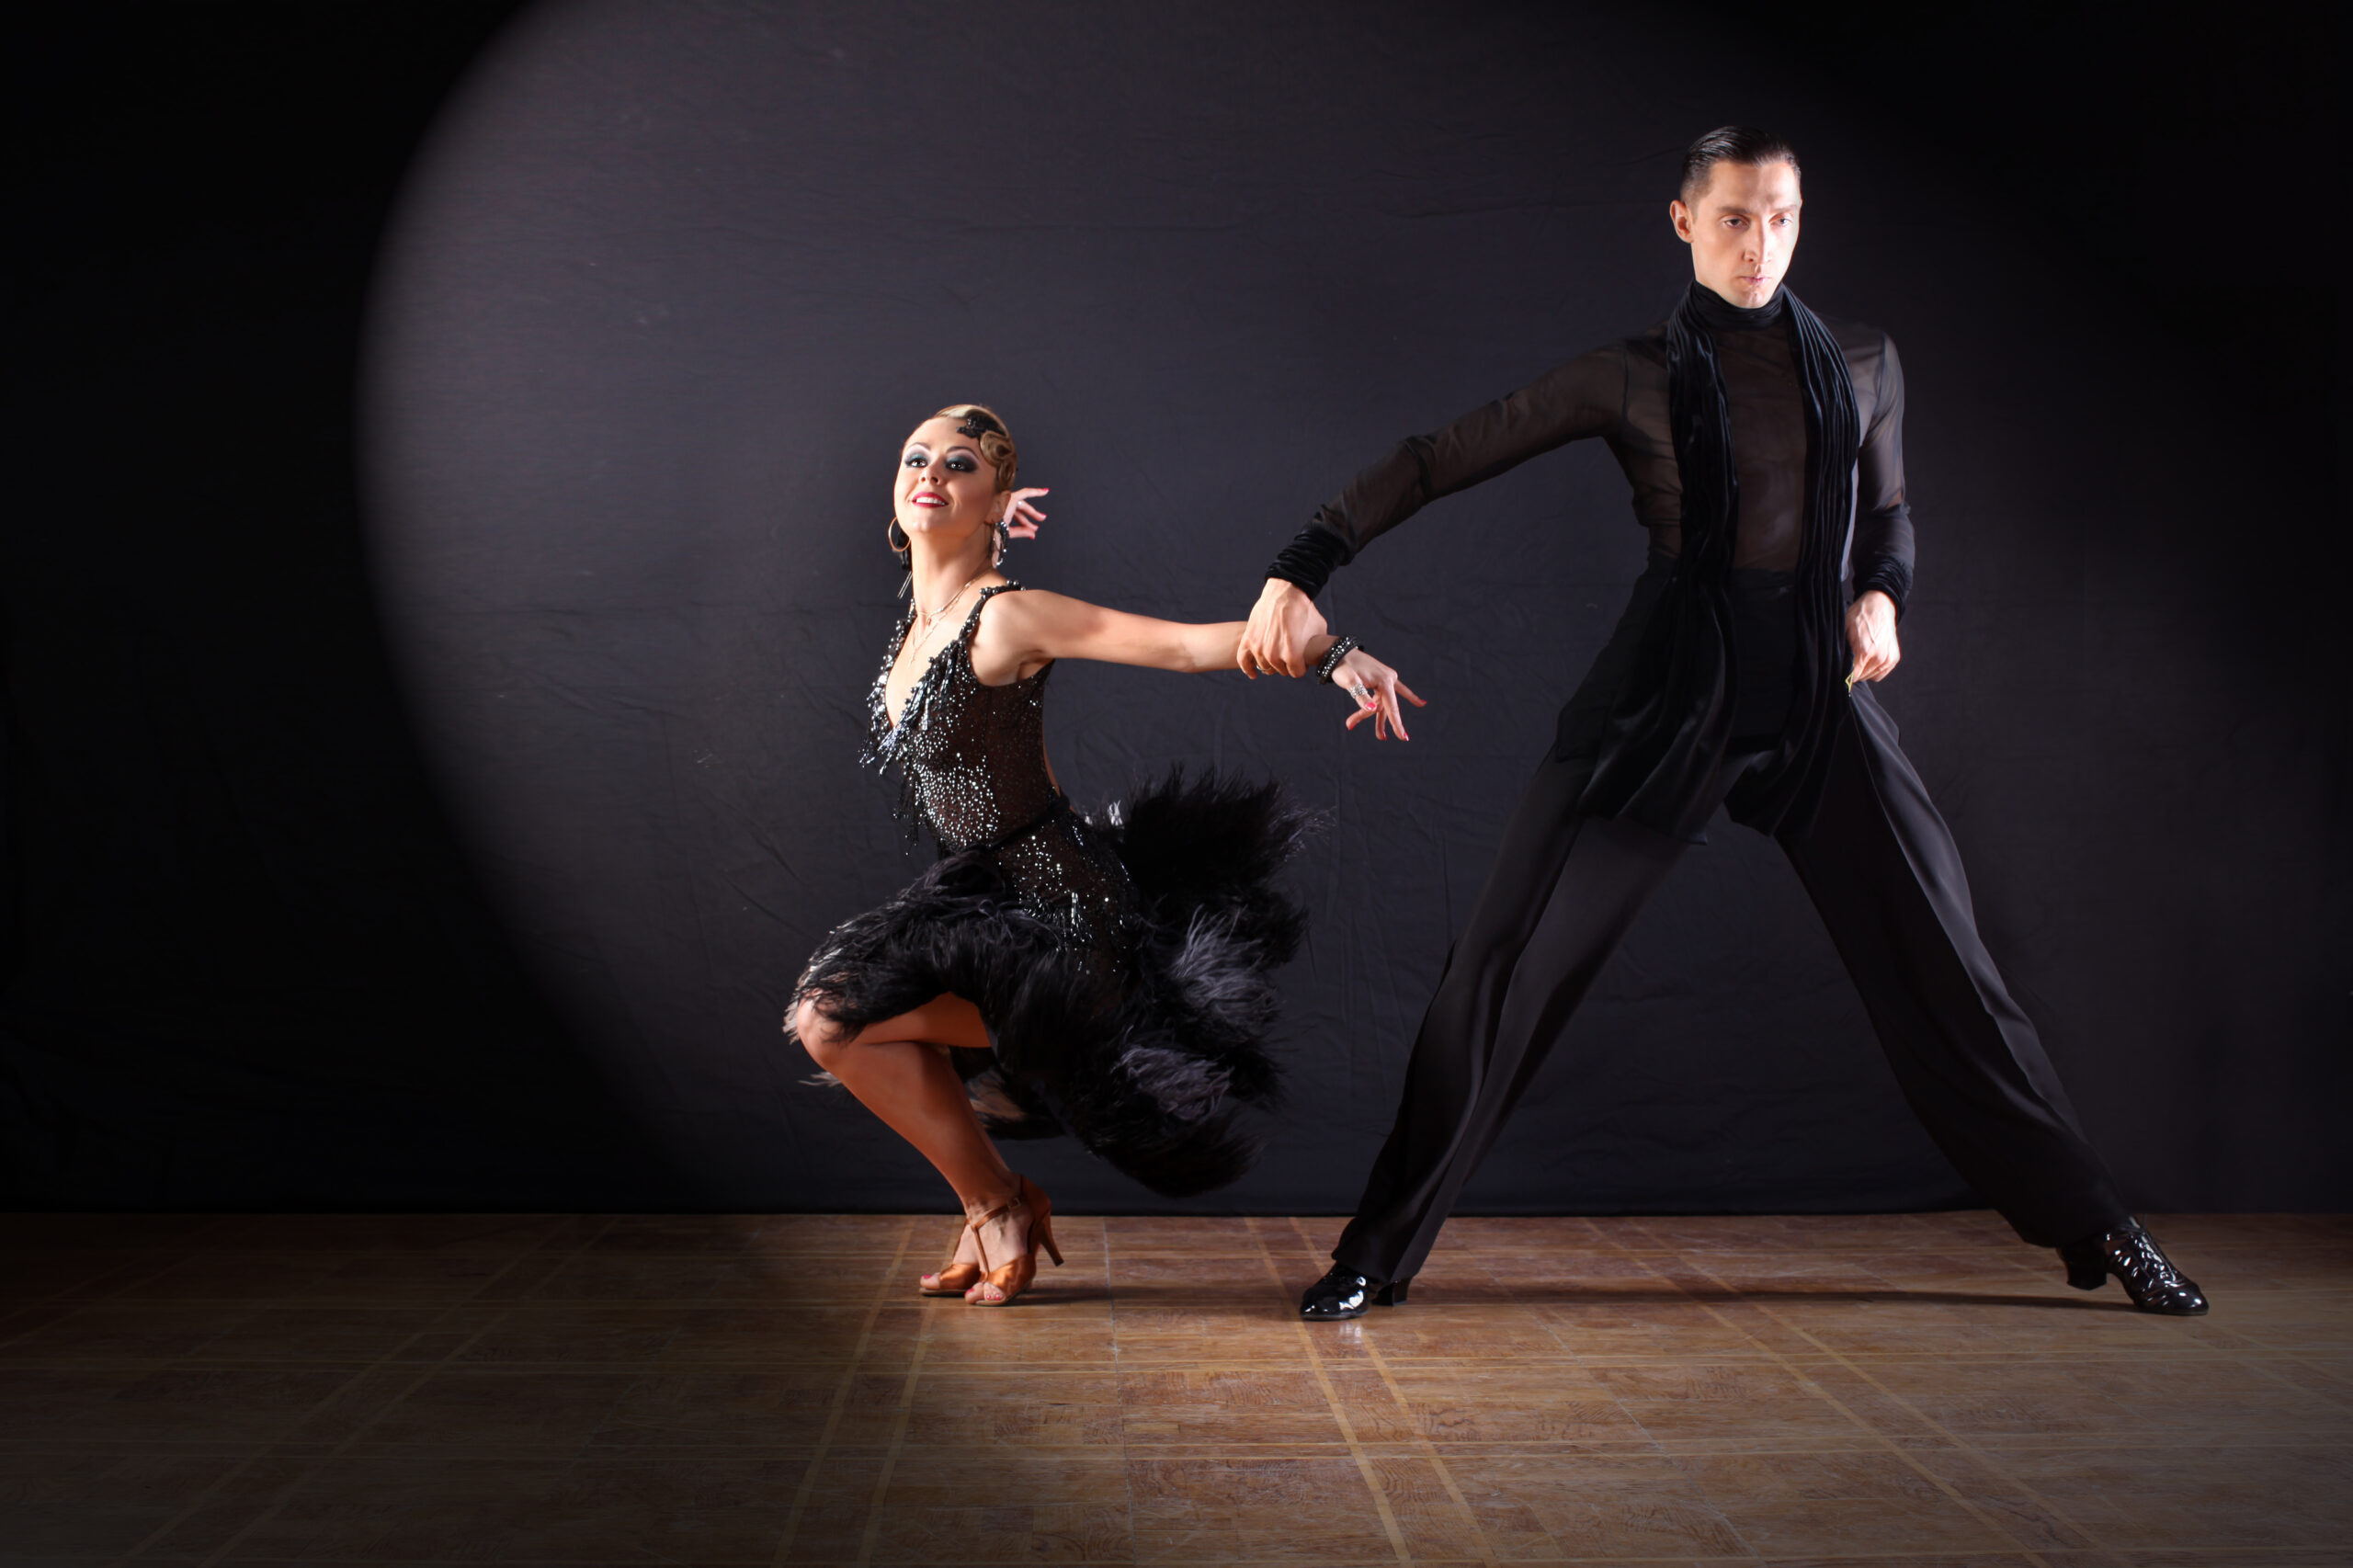 社交ダンスの陽気な響き – チャチャチャの華やぎと躍動について